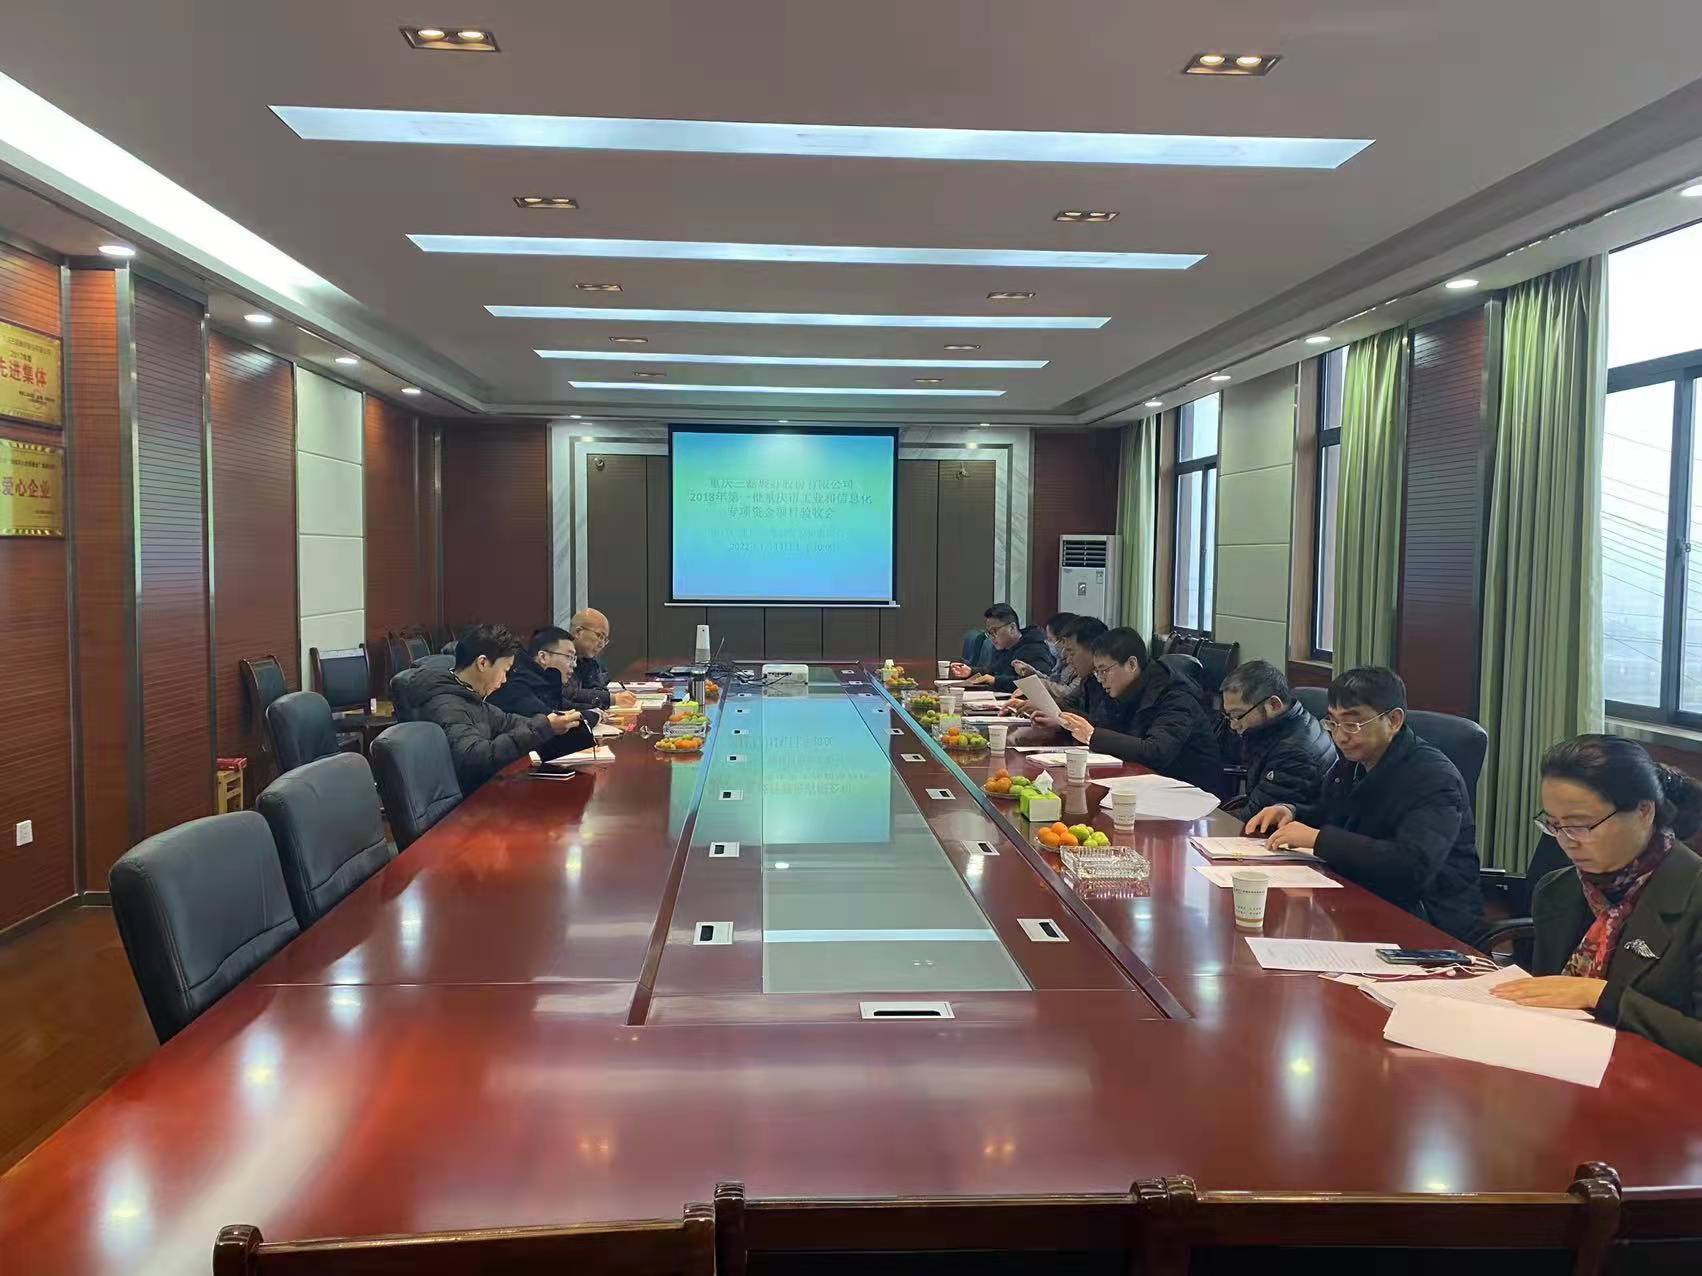 重庆三磊玻纤股份有限公司“高性能E-CR玻璃纤维建设项目”顺利通过验收